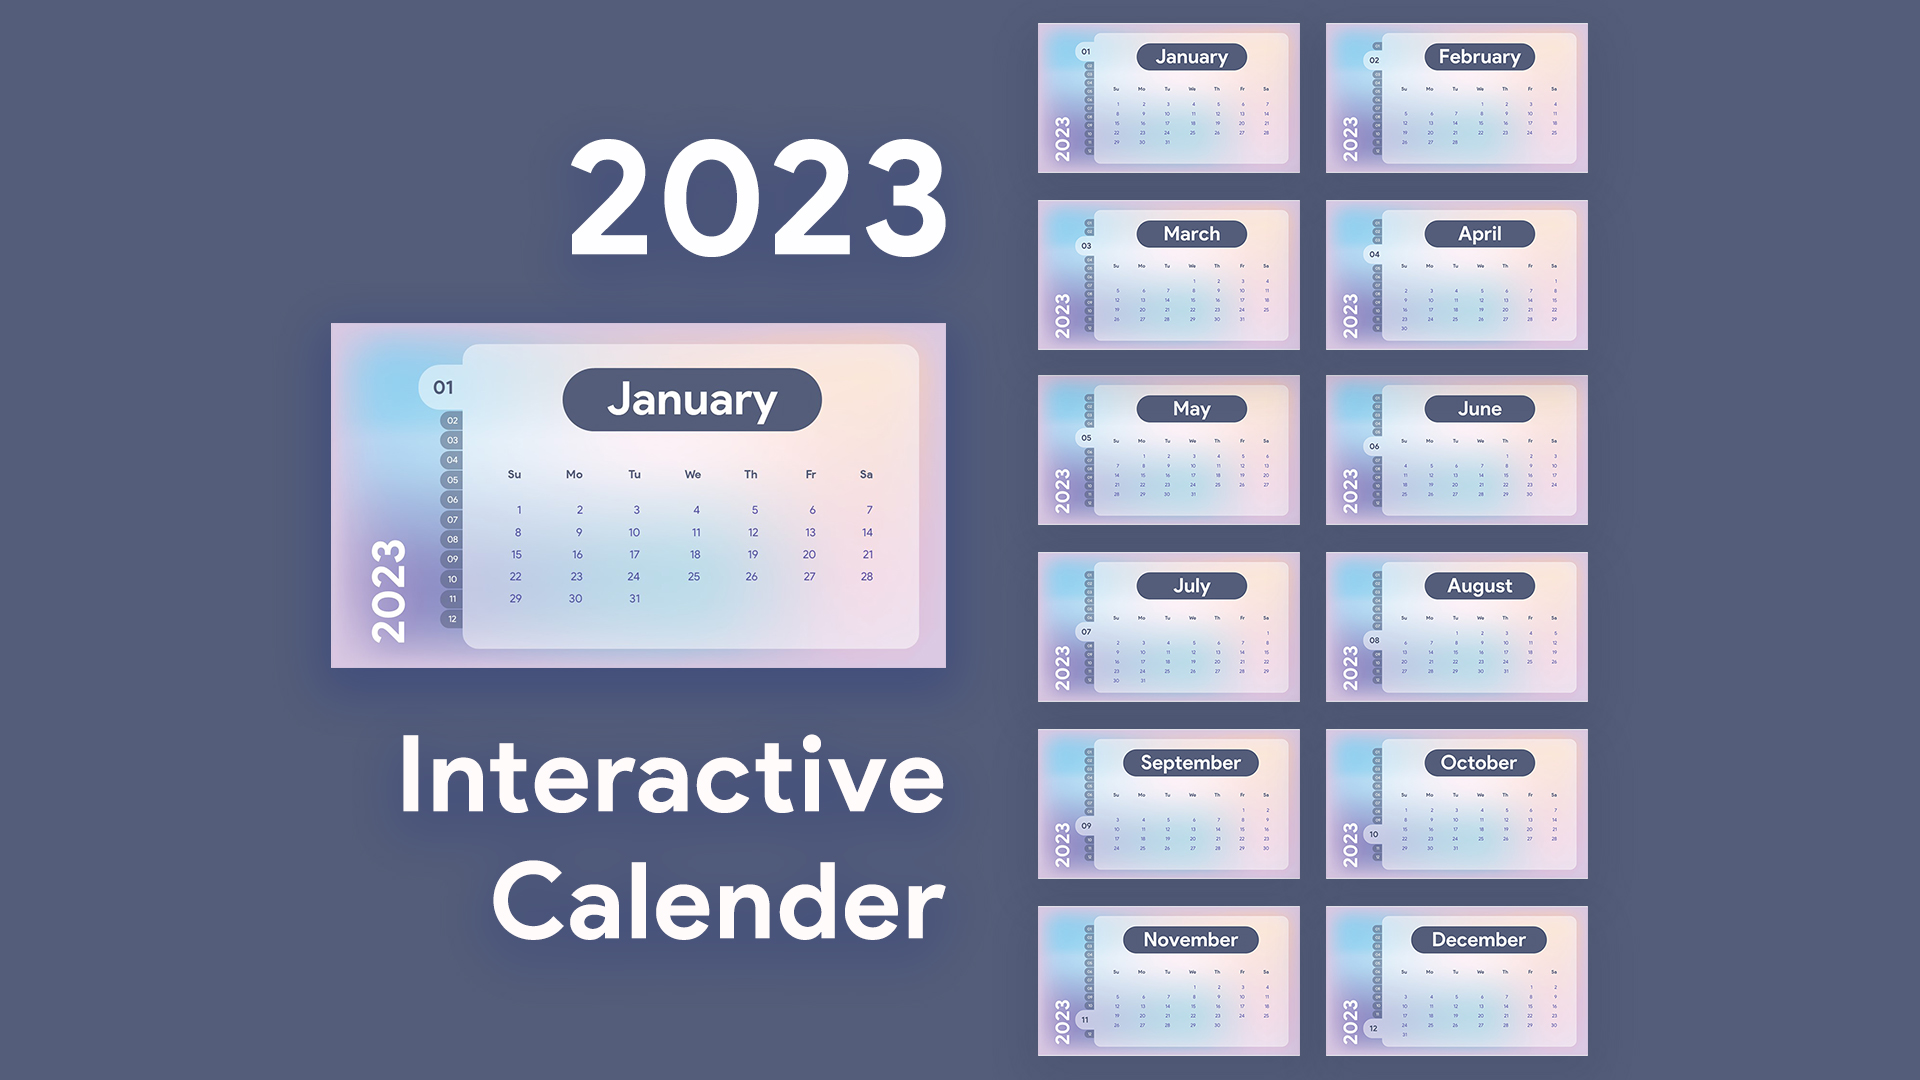 Calendario interactivo gratuito 2023